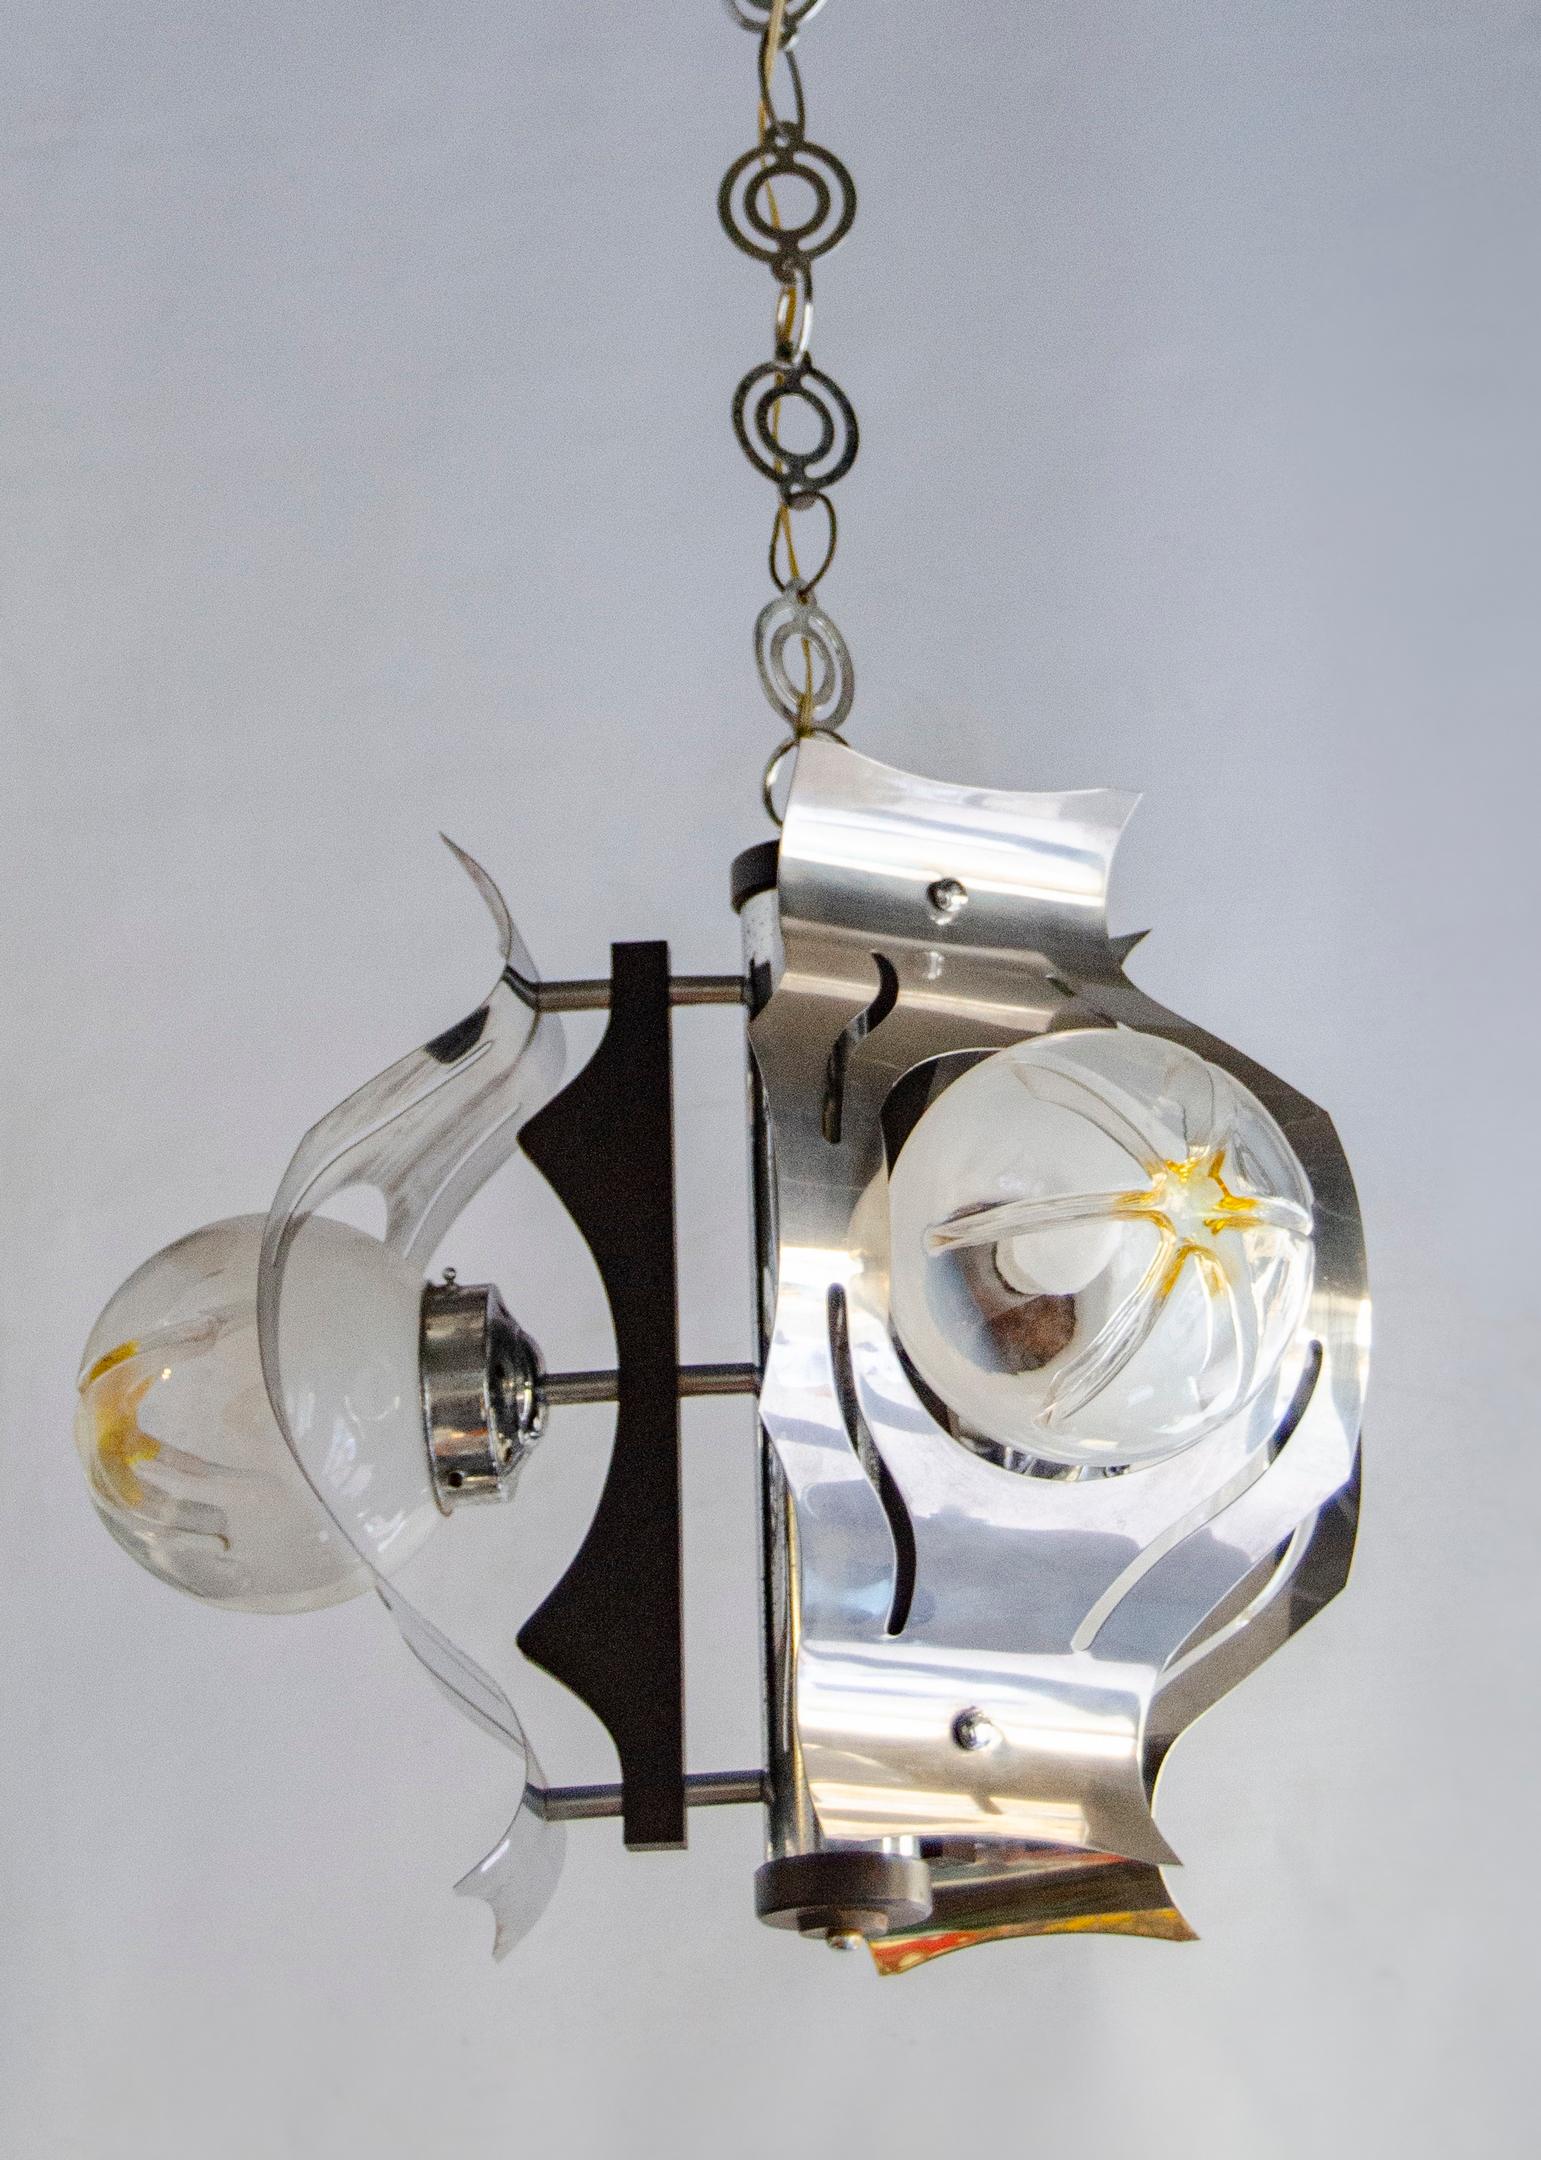 Plafonnier italien des années 1950, Mazzega
Création de Mazzega Fabricacion Italiana
lustre à 3 lumières avec globes en verre de murano et métal chromé
milieu du siècle
parfait état
usure naturelle.